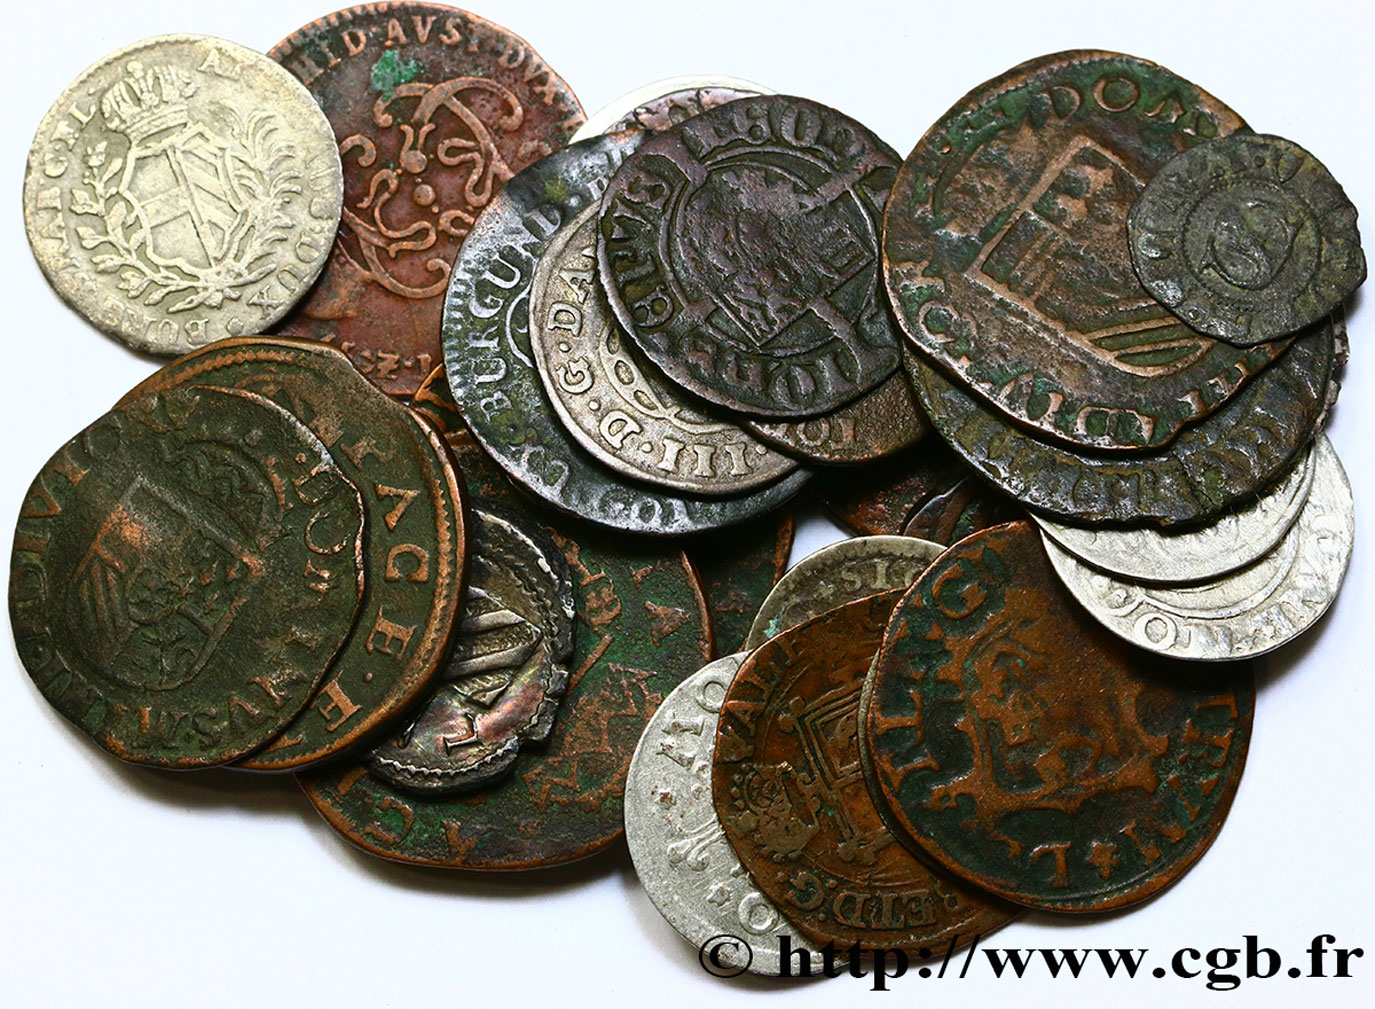 WORLD COINS LOTS Lot de 30 Monnaies étrangères en cuivre et billon n.d  VF 